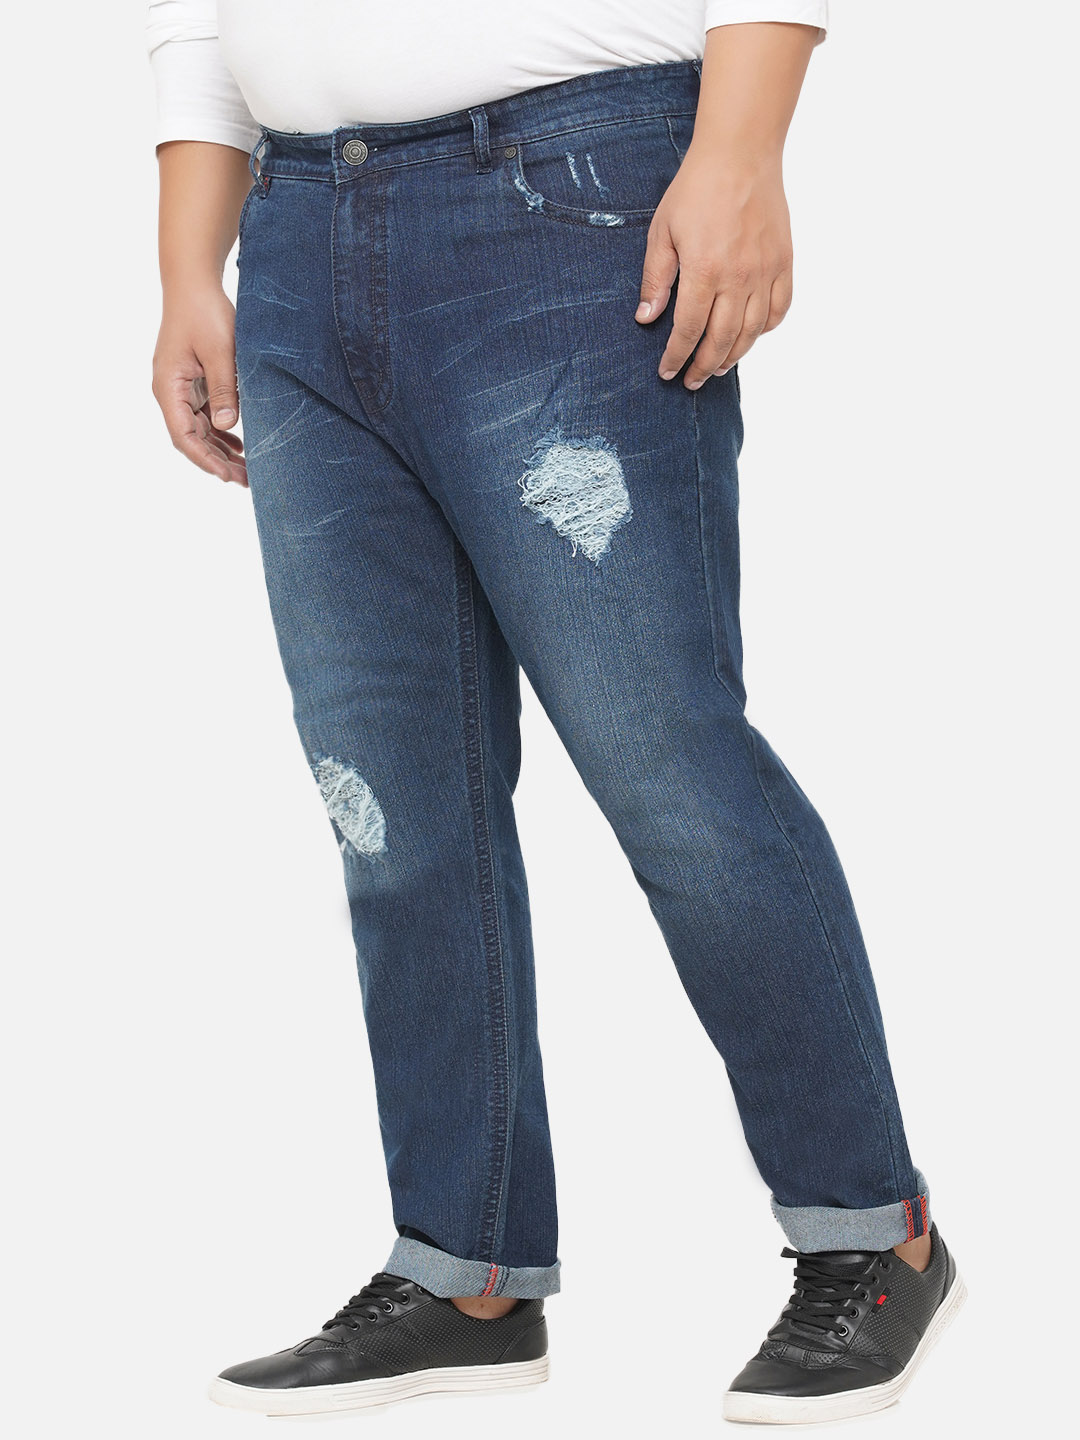 bottomwear/jeans/EJPJ25072/ejpj25072-3.jpg